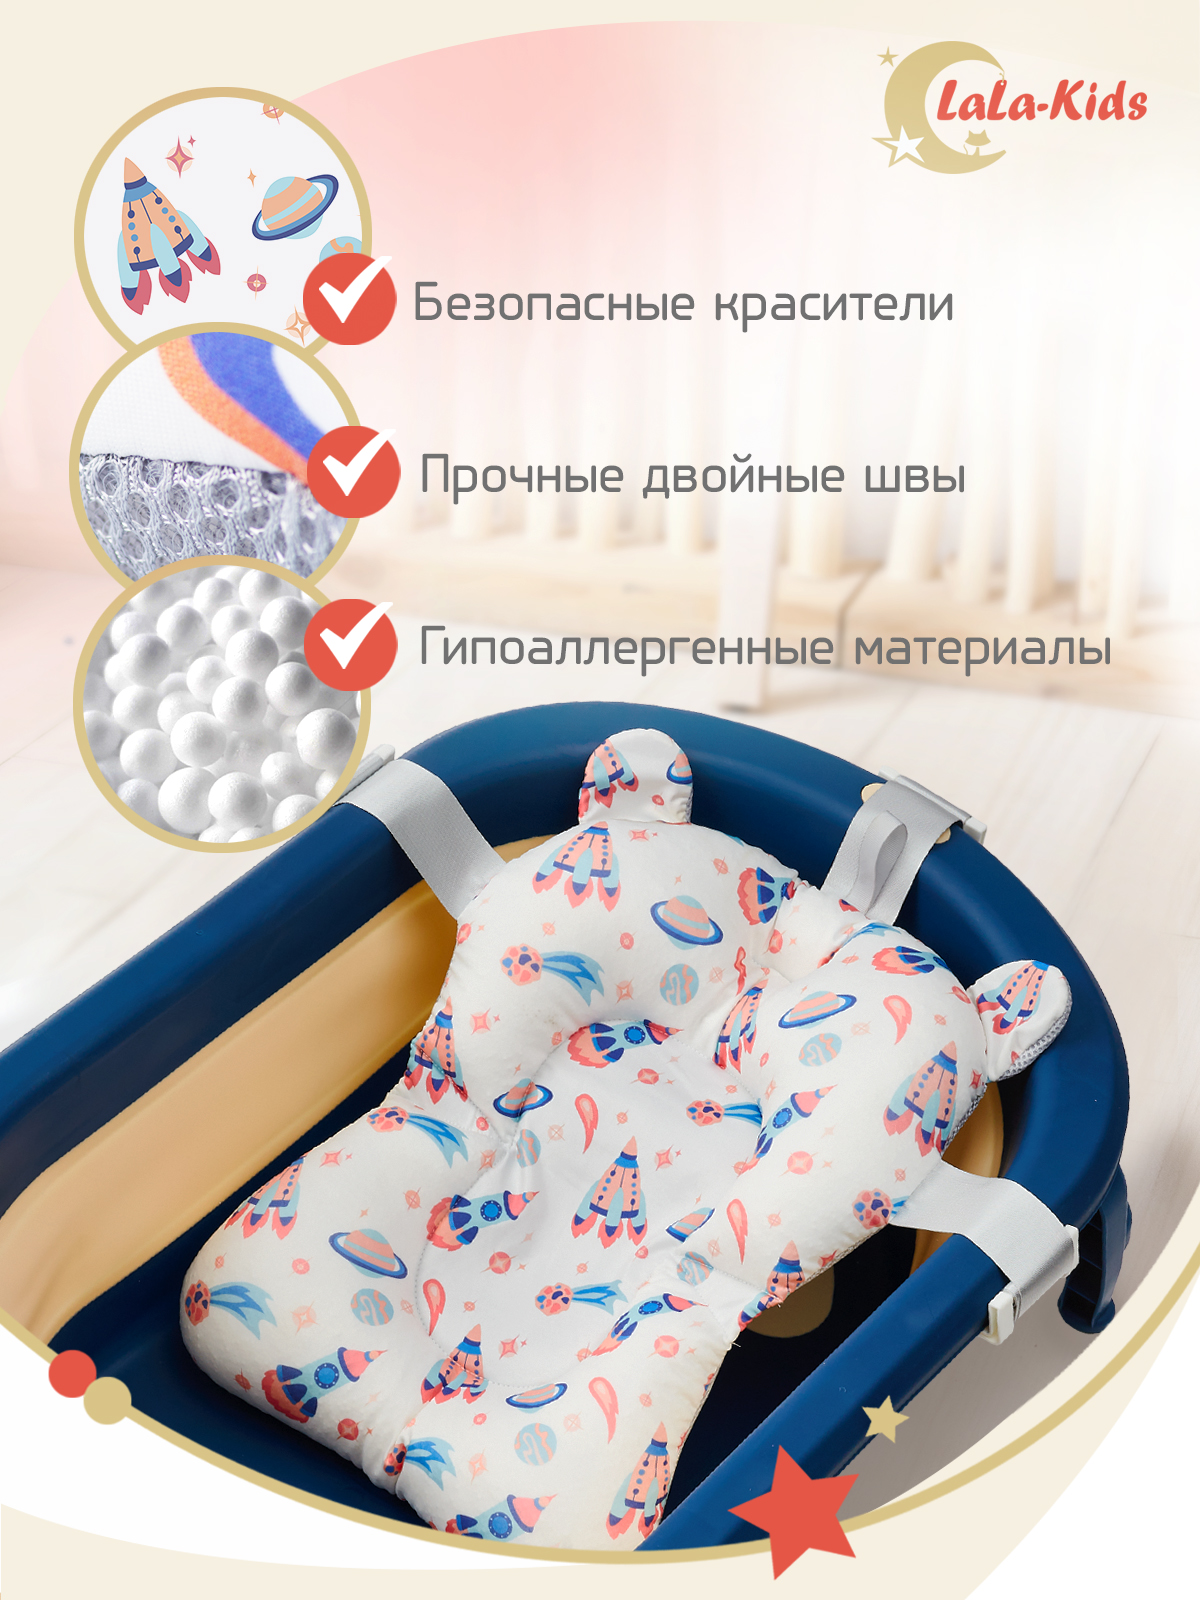 Матрас LaLa-Kids для купания новорожденных - фото 7